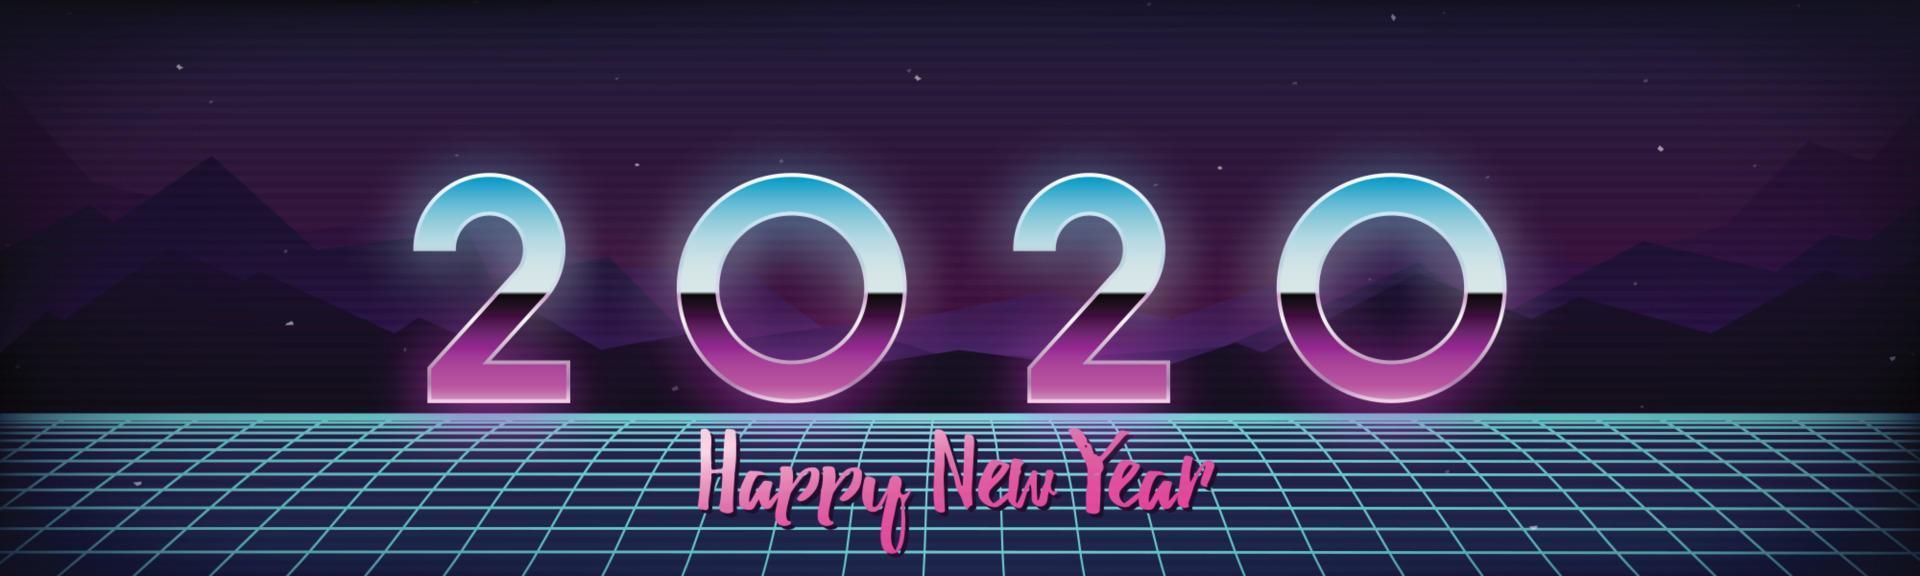 Frohes neues Jahr 2020 Banner im digitalen Retro-futuristischen Stil der 80er Jahre. vektor